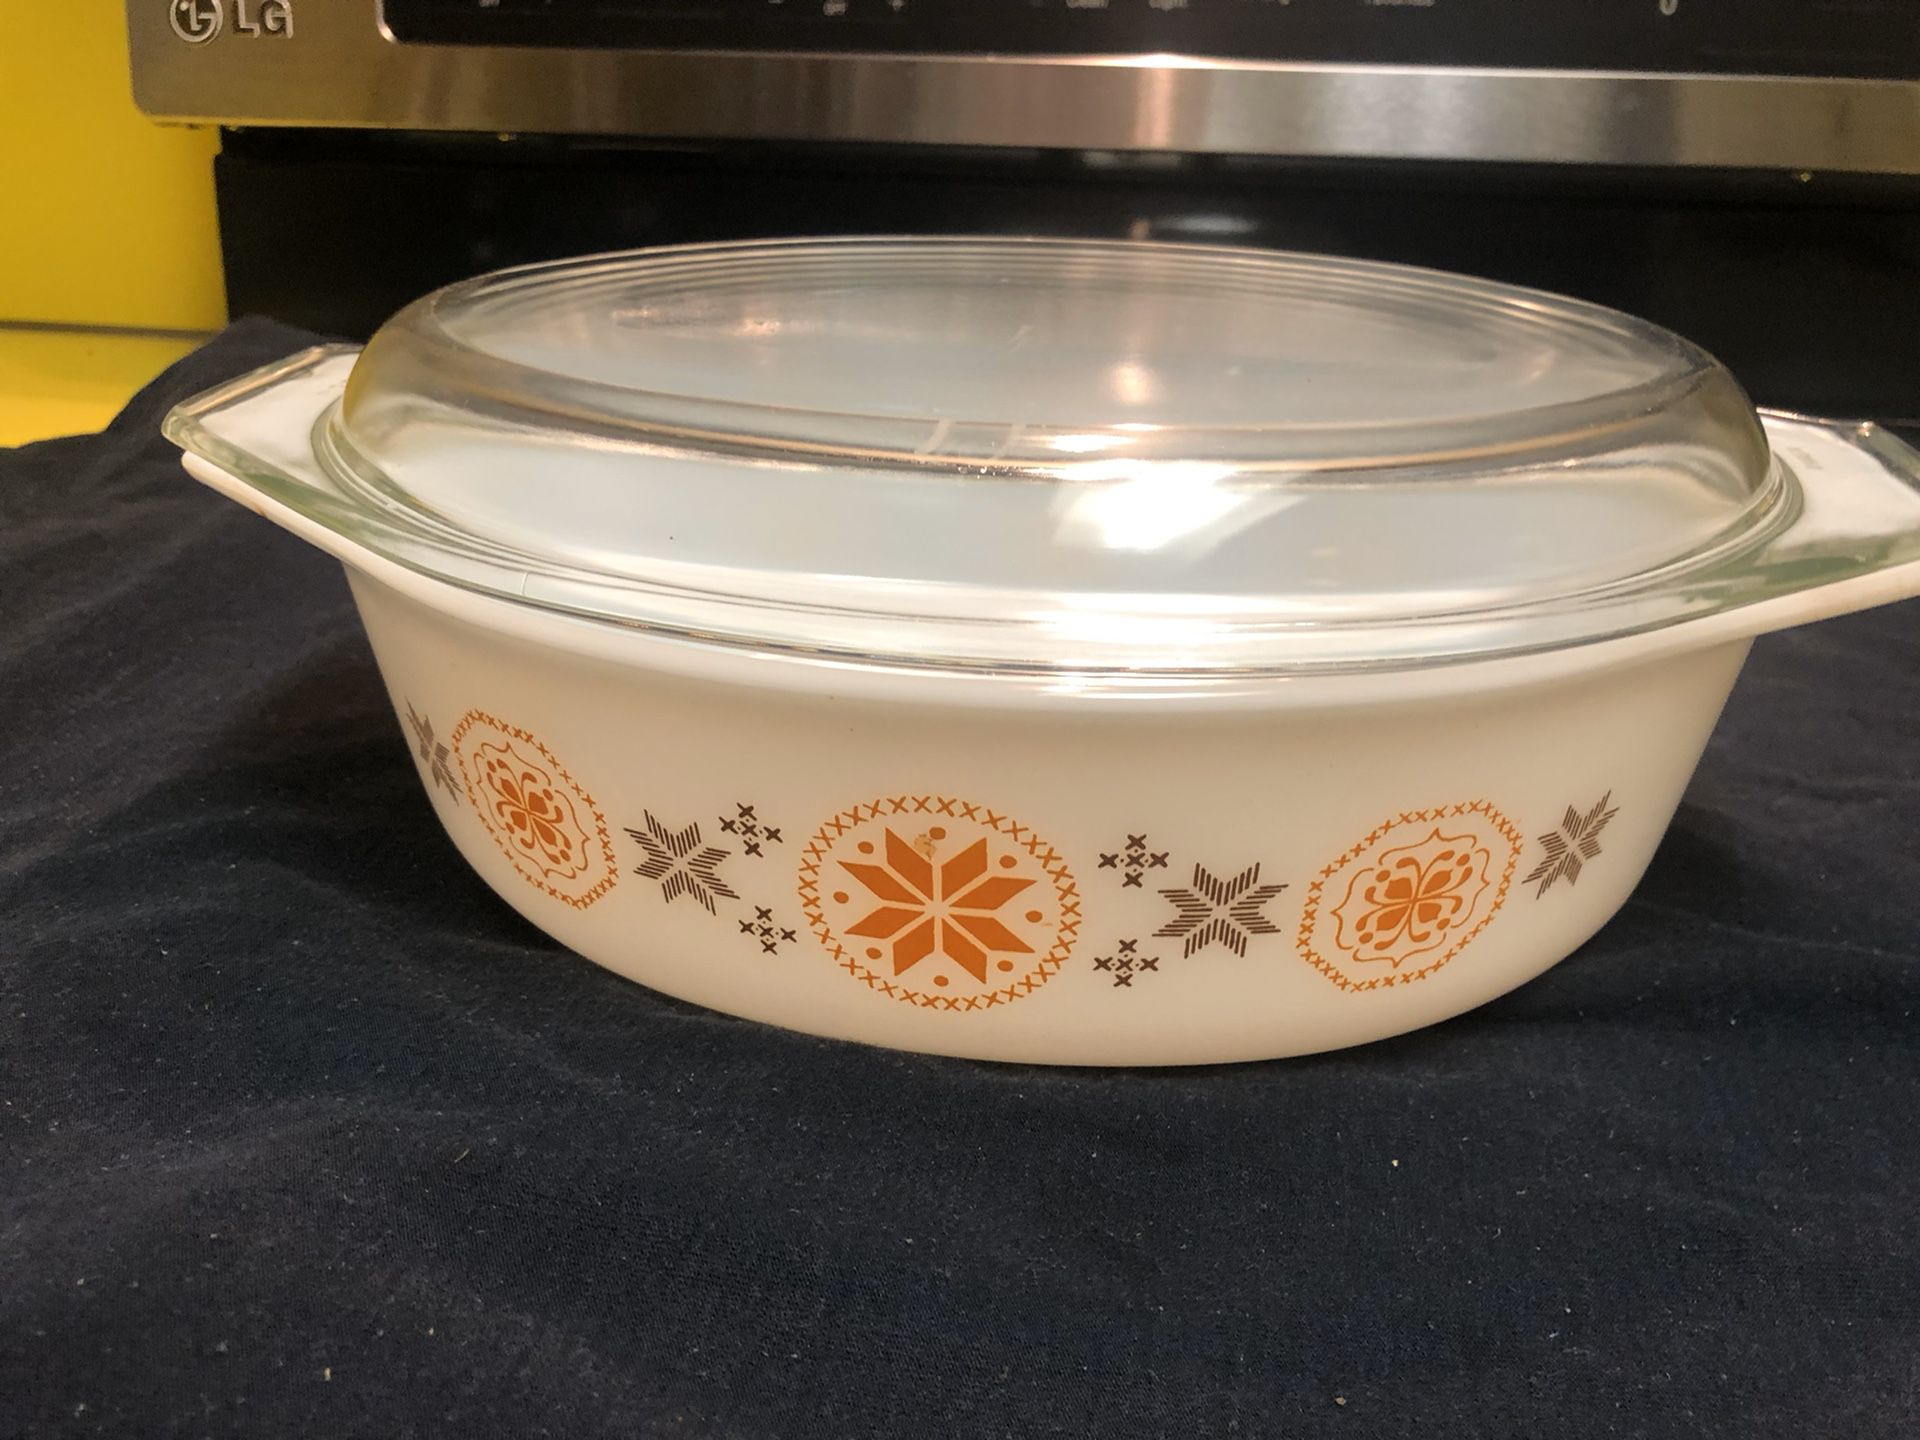 Vintage MCM Pyrex 2 1/2 quart casserole dish with cover